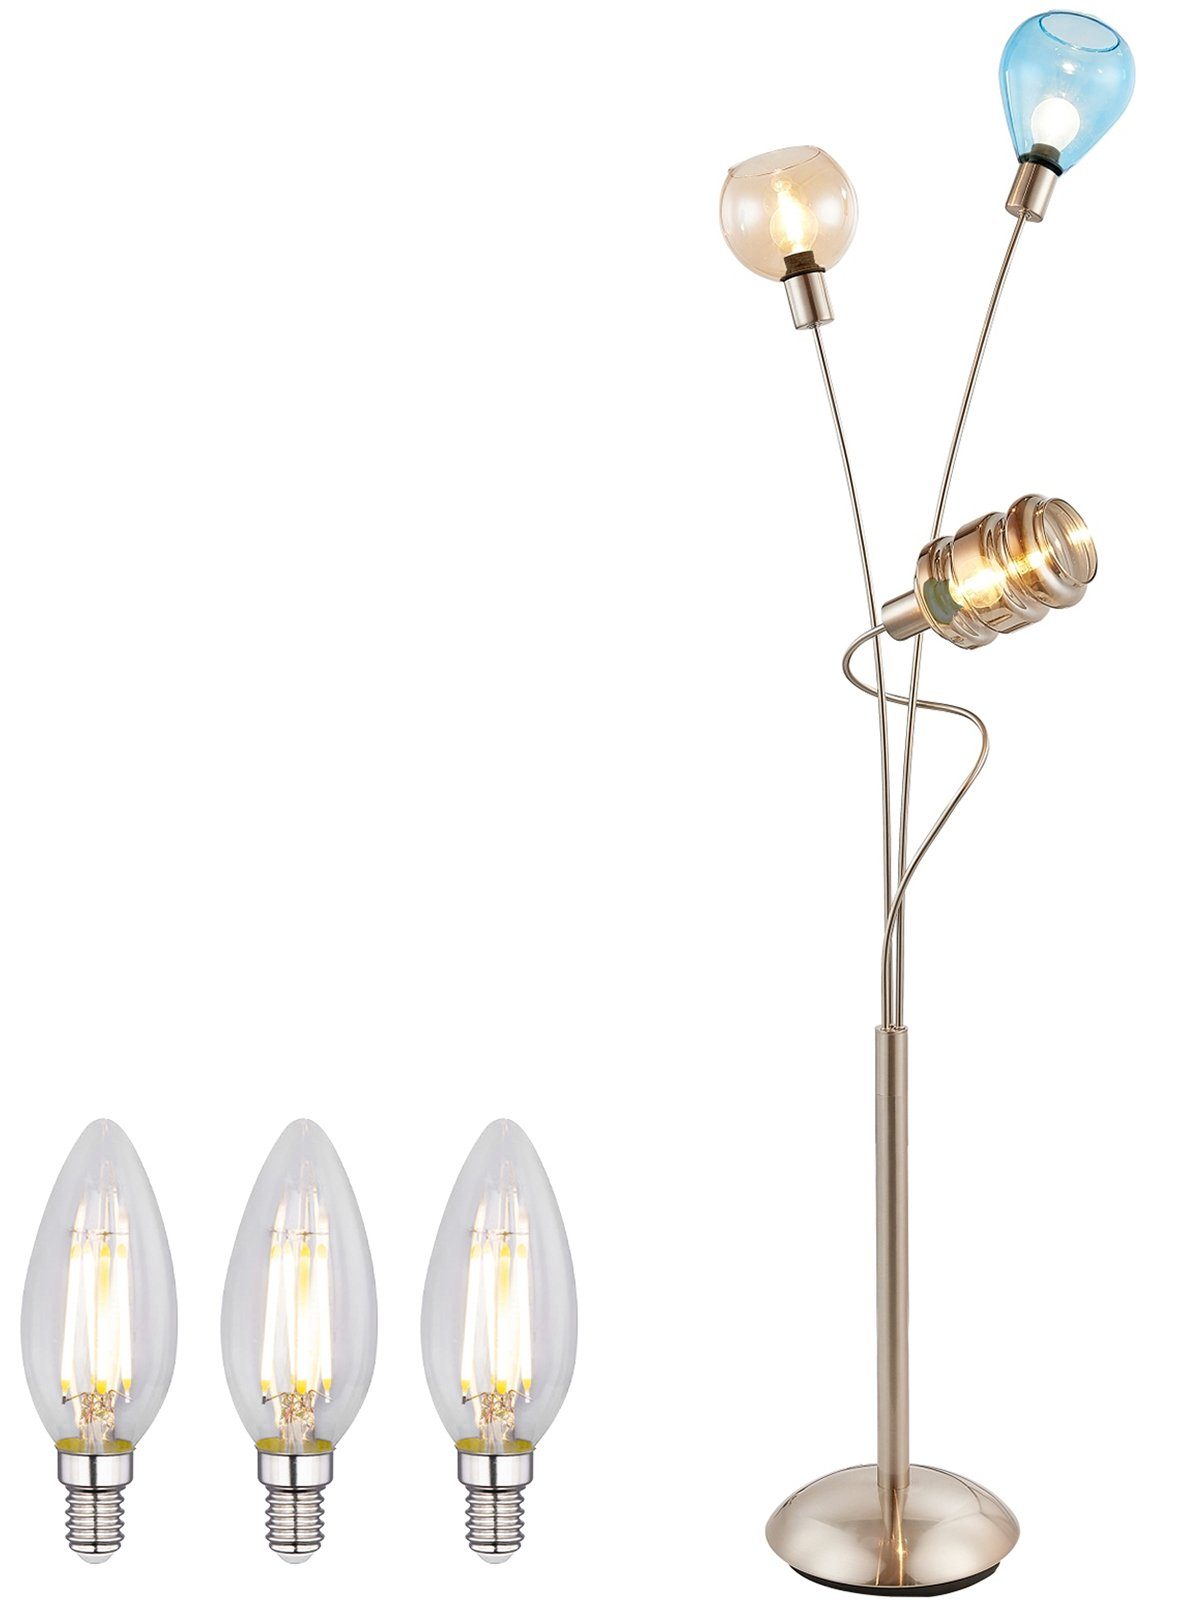 bmf-versand Stehlampe Stehlampe Wohnzimmer Stehleuchte LED Glas bunt Retro  Metall 3 Flammig